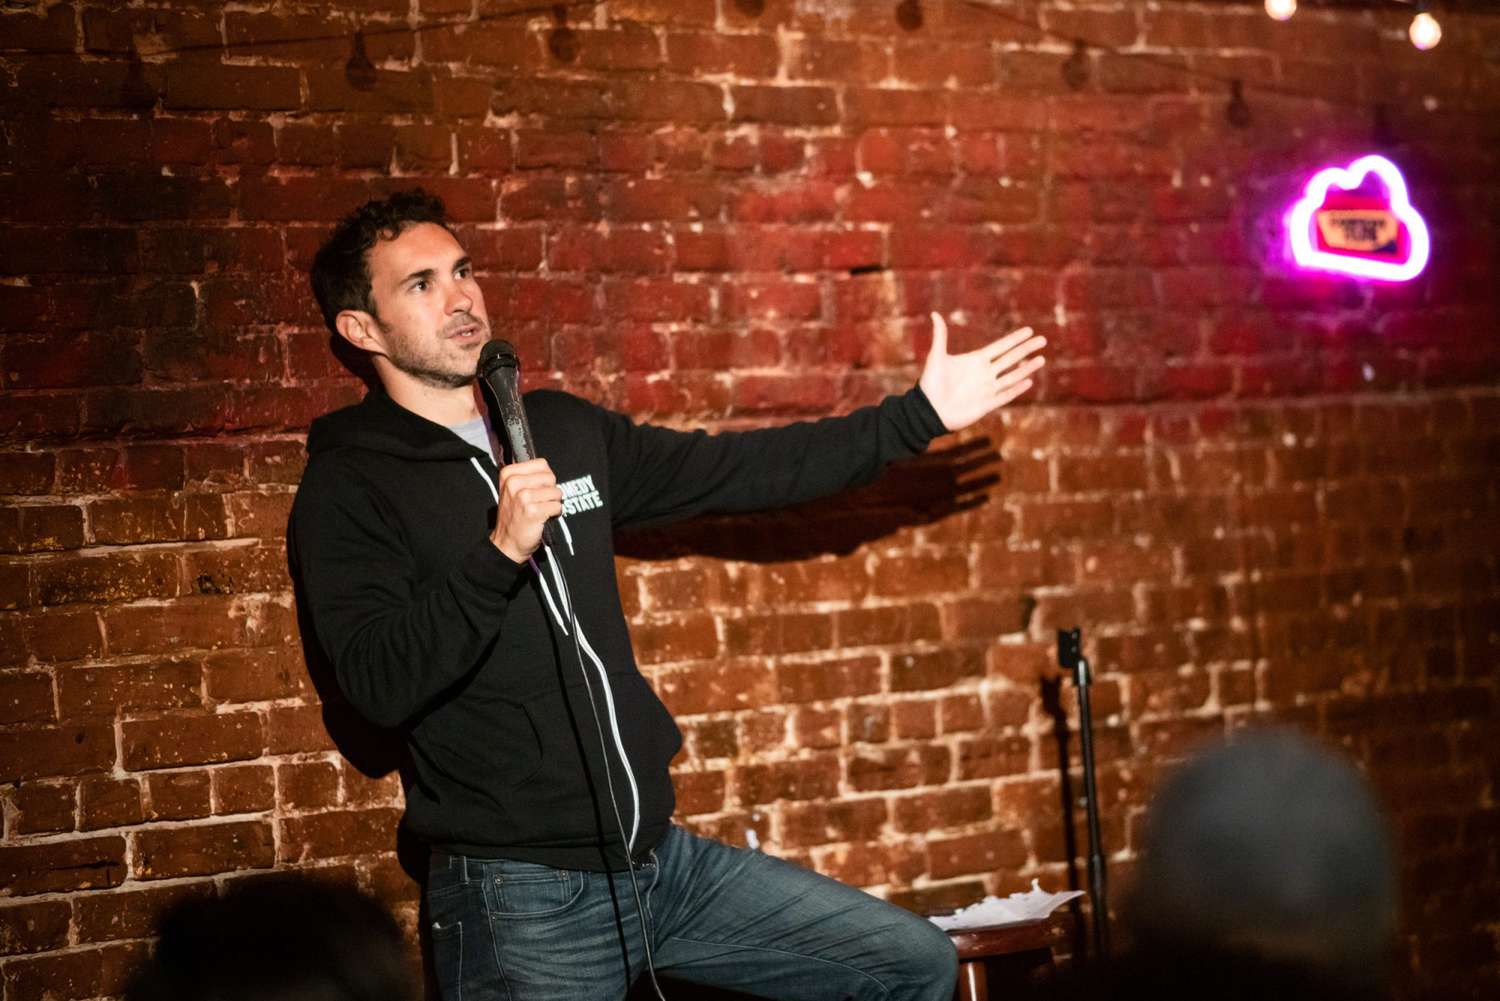 <p>Y al que captamos muy inspirado fue al comediante Mark Normand en el escenario del St. Mark's Comedy Club de Nueva York. ¿Estaría alabando los deliciosos platos vegetarianos del local que maneja el colombiano Alex Carabaño? </p>
                            